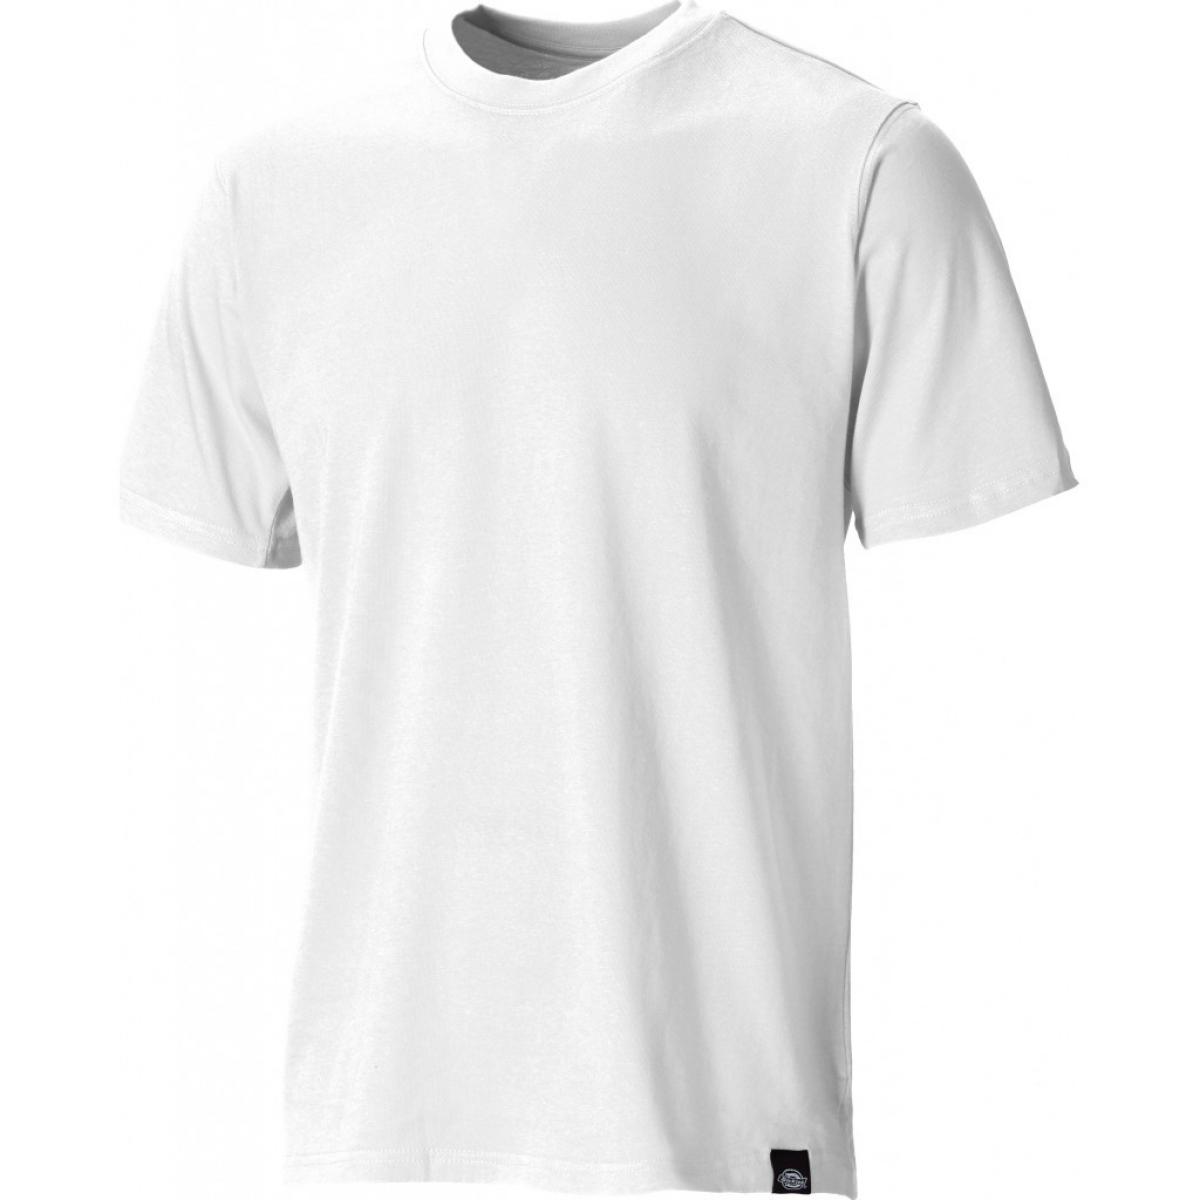 Hersteller: Dickies Herstellernummer: SH34225 Artikelbezeichnung: T-Shirt Farbe: Weiß